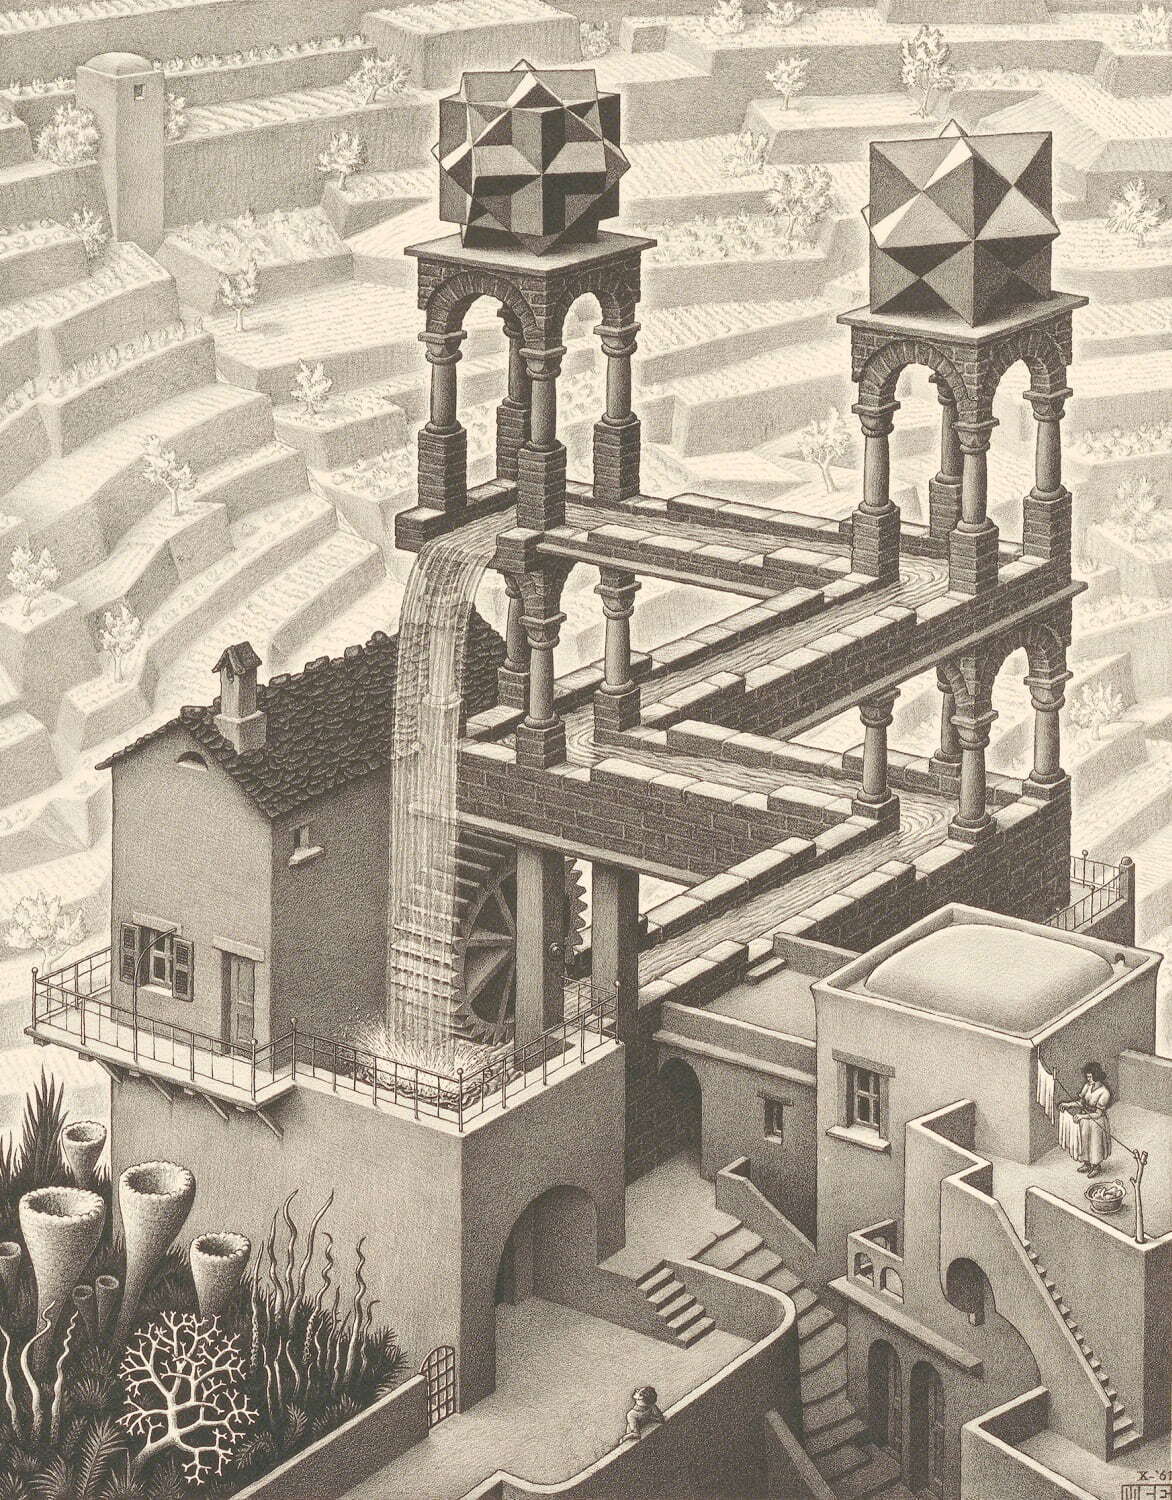 マウリッツ・コルネリス・エッシャー 《滝》 1961年制作 リトグラフ
Maurits Collection, Italy
All M.C.Escher works © 2024 The M.C.Escher Company, Baarn, The Netherlands. All rights reserved
mcescher.com